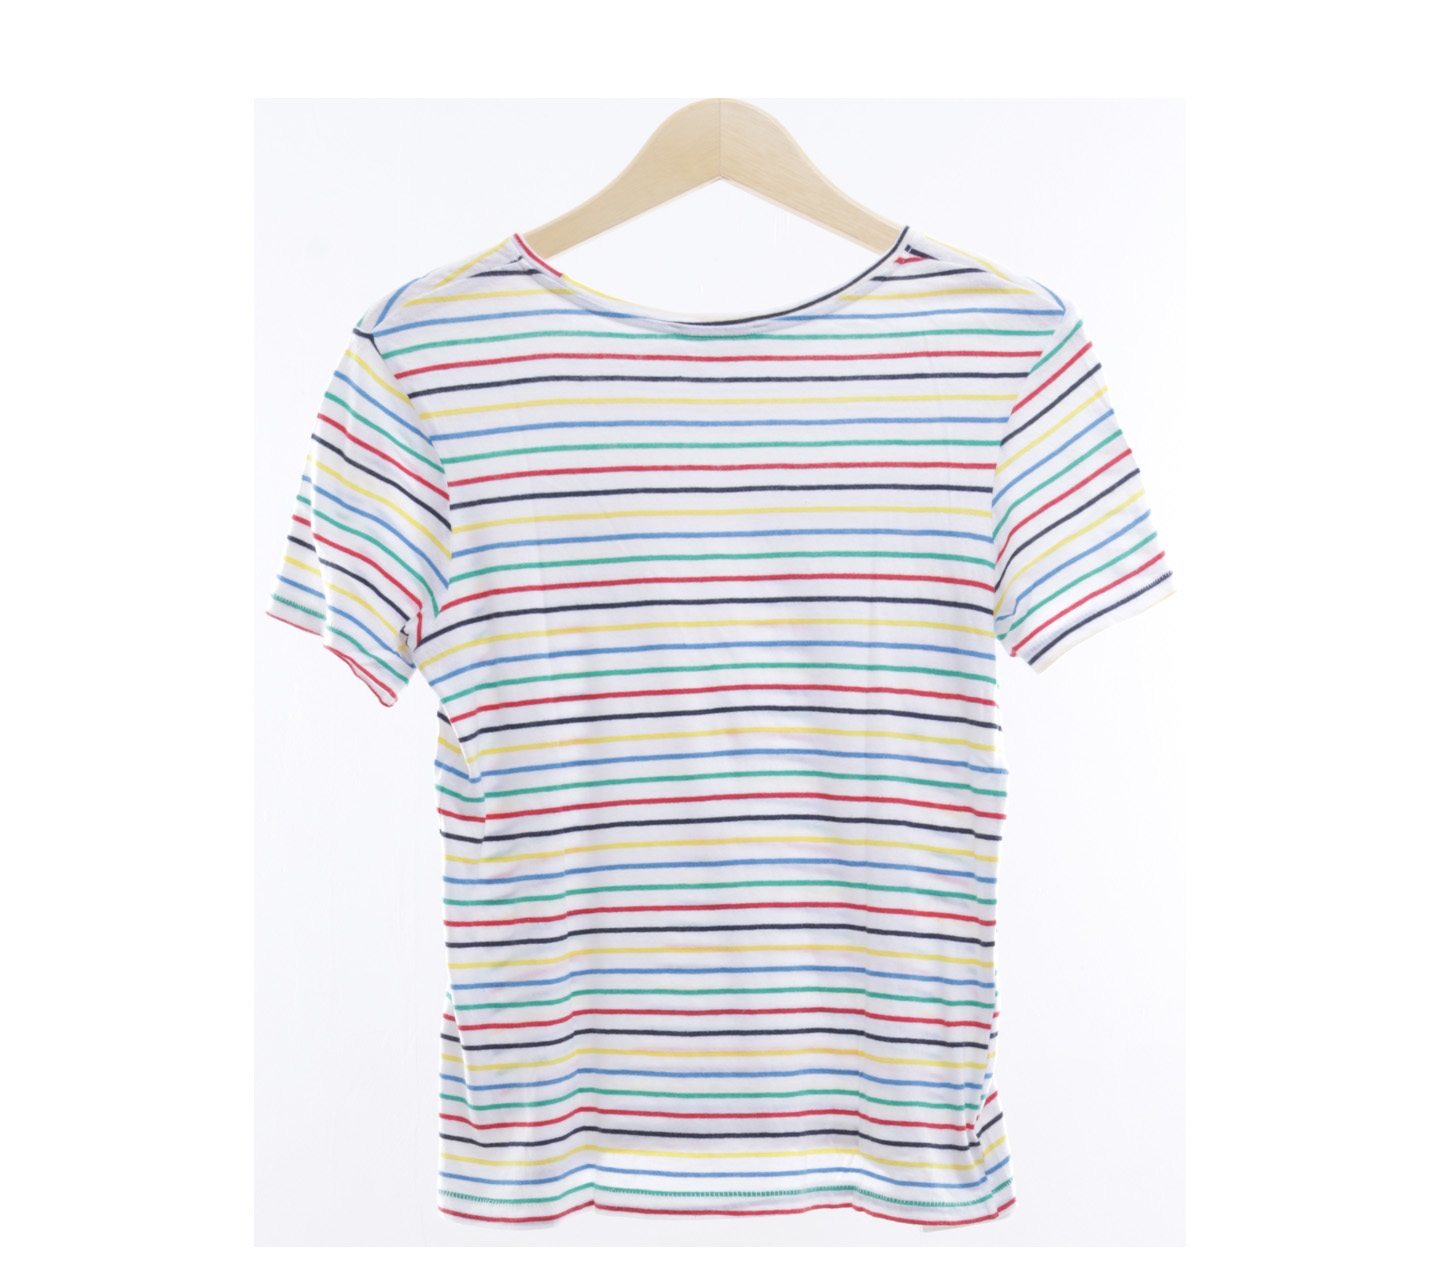 Zara White Striped T-Shirt